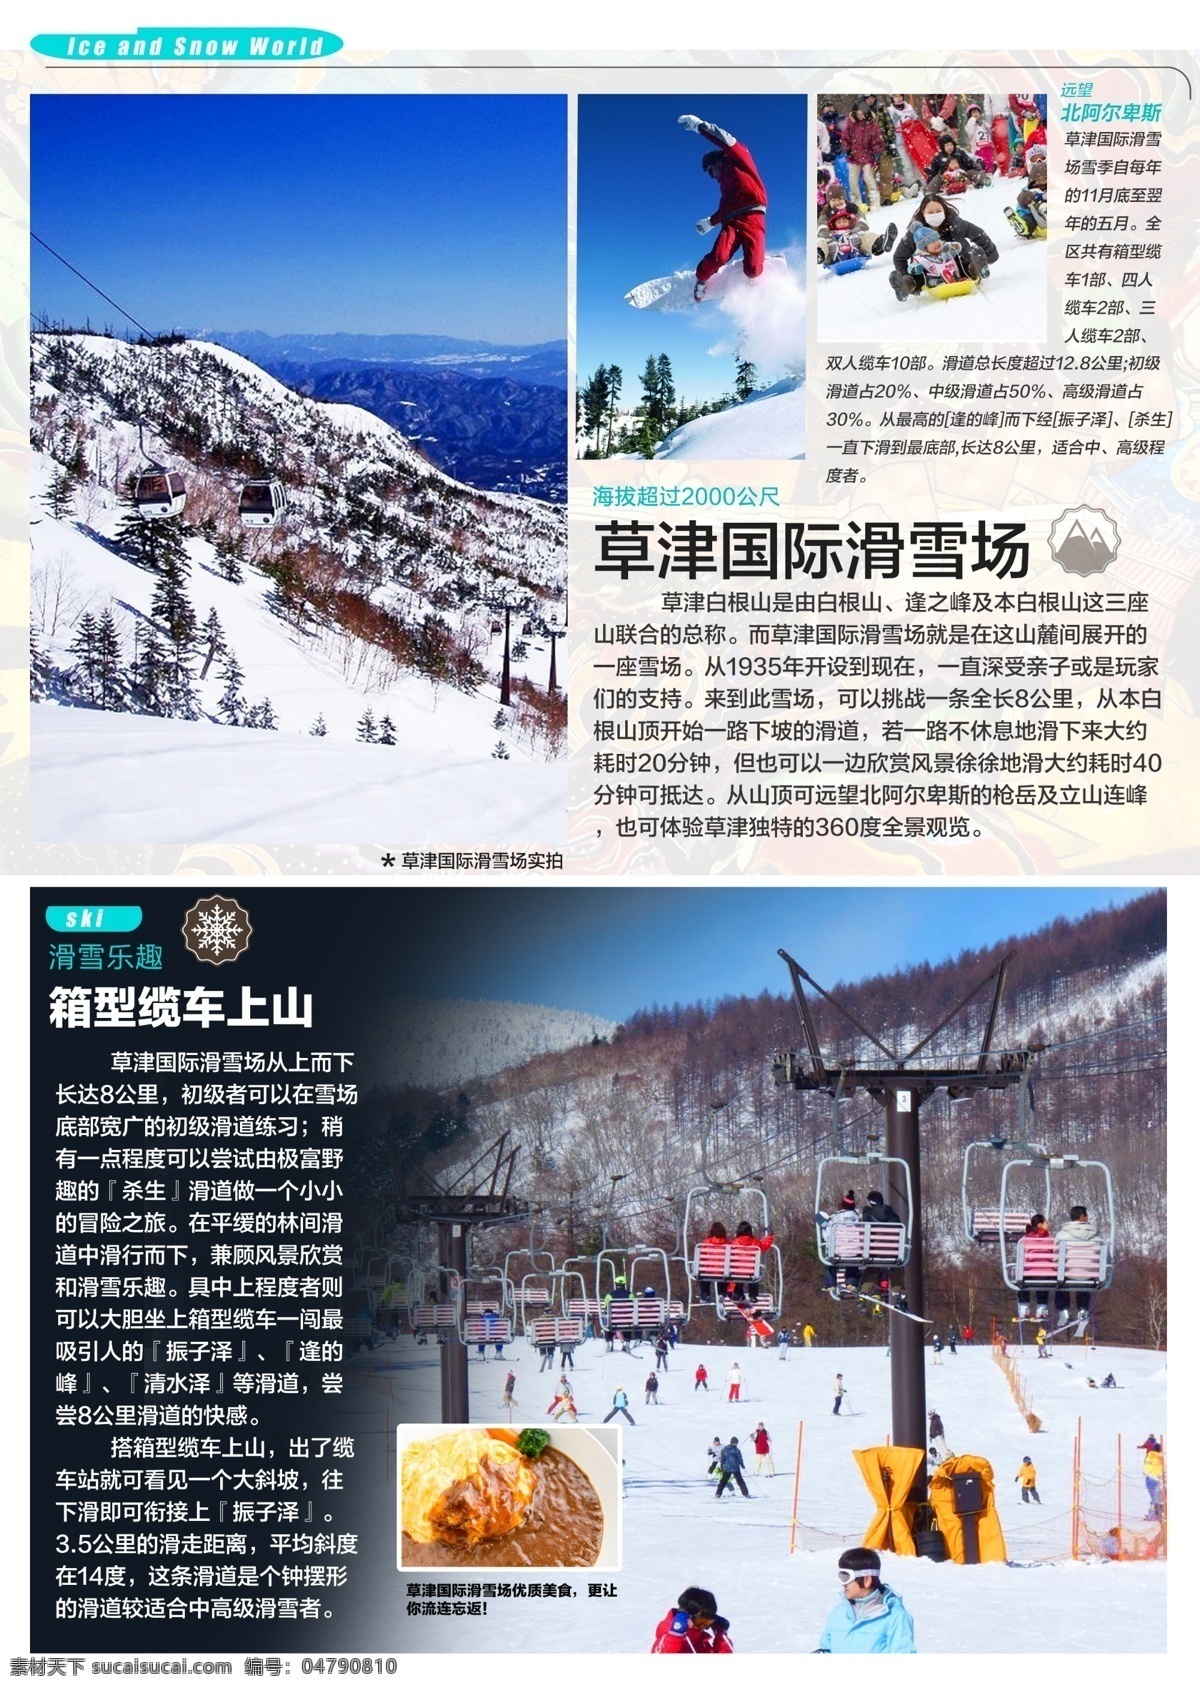 草 津 國 際 滑雪 場 日本 旅游 宣传图 简约 海报